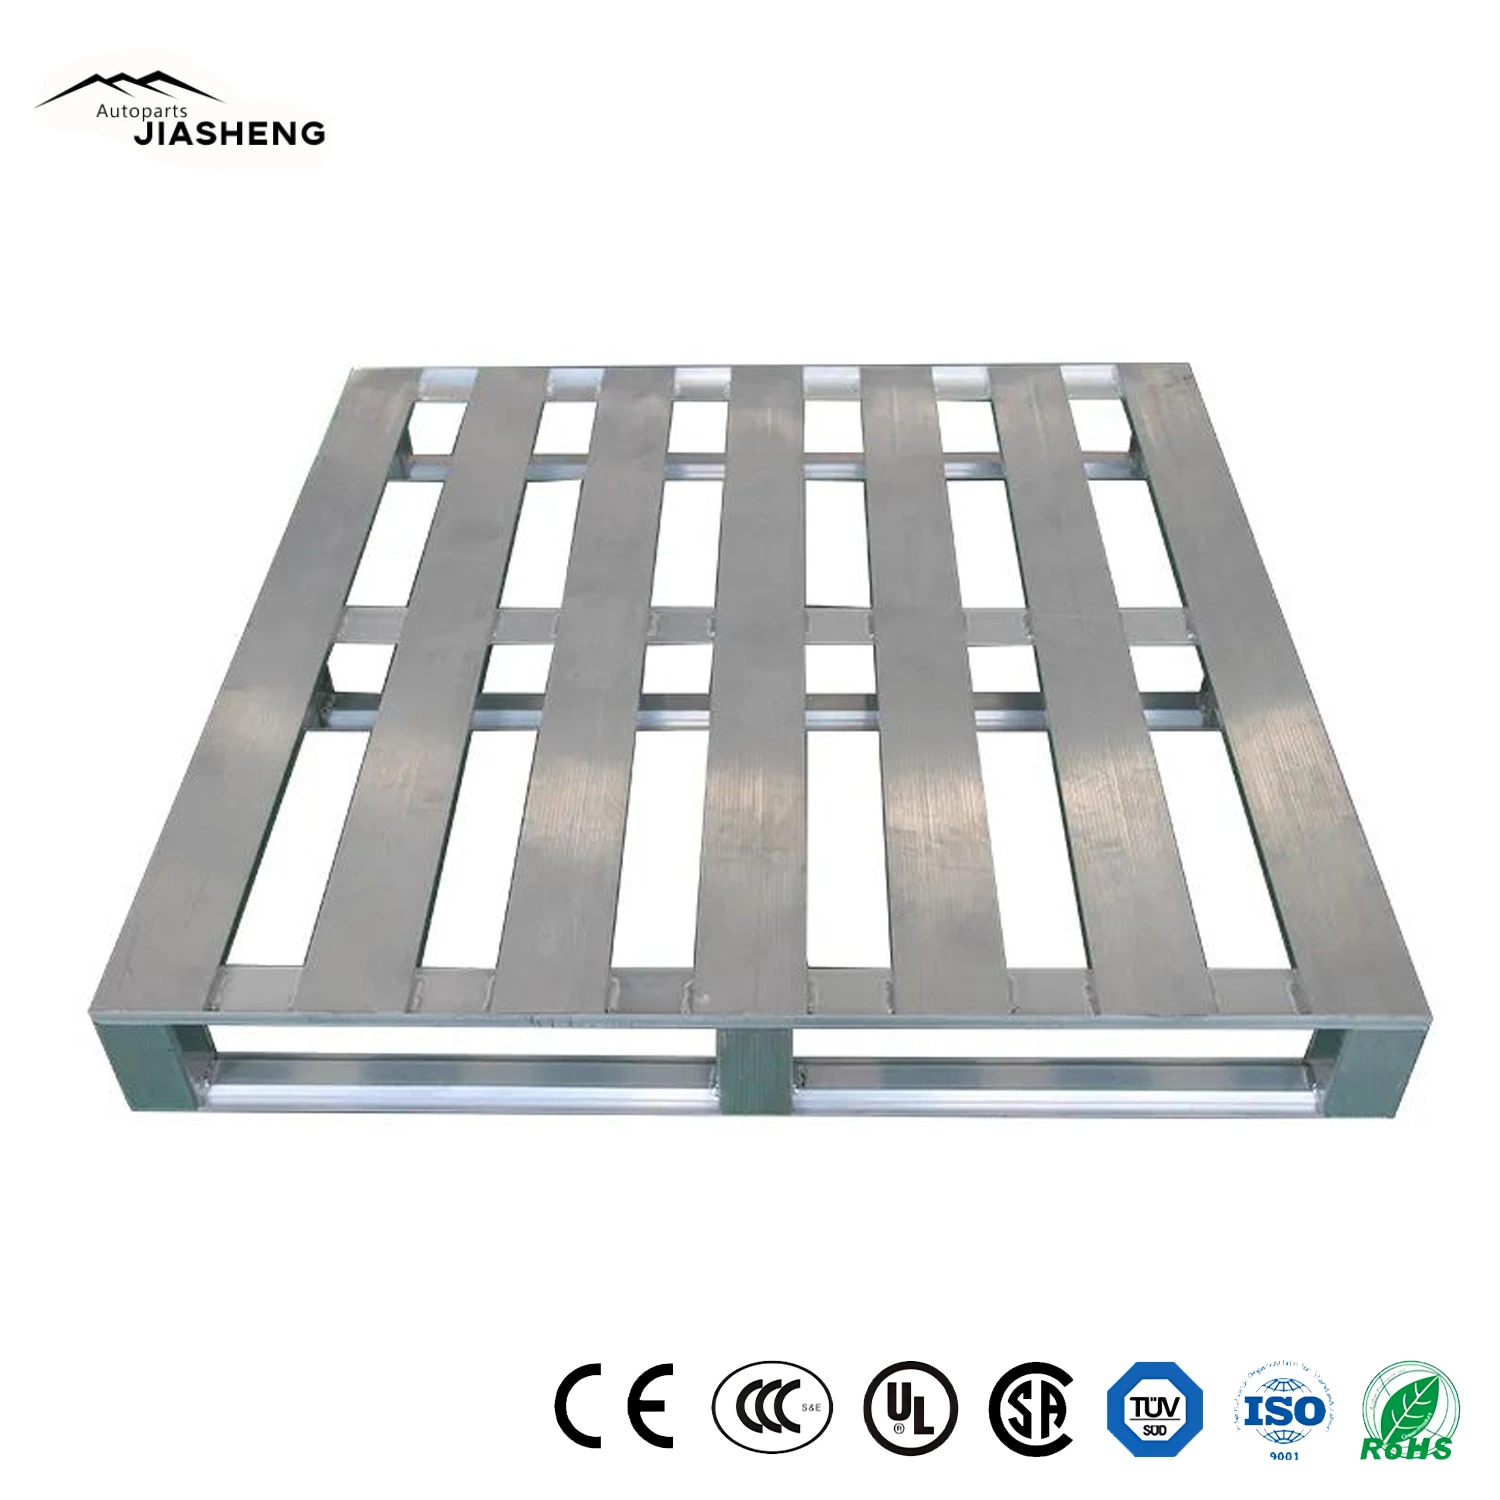 Paletes de aço inoxidável de empilhamento galvanizado com face dupla palete de aço plano Fornecedor China de tabuleiros metálicos para paletes metálicos